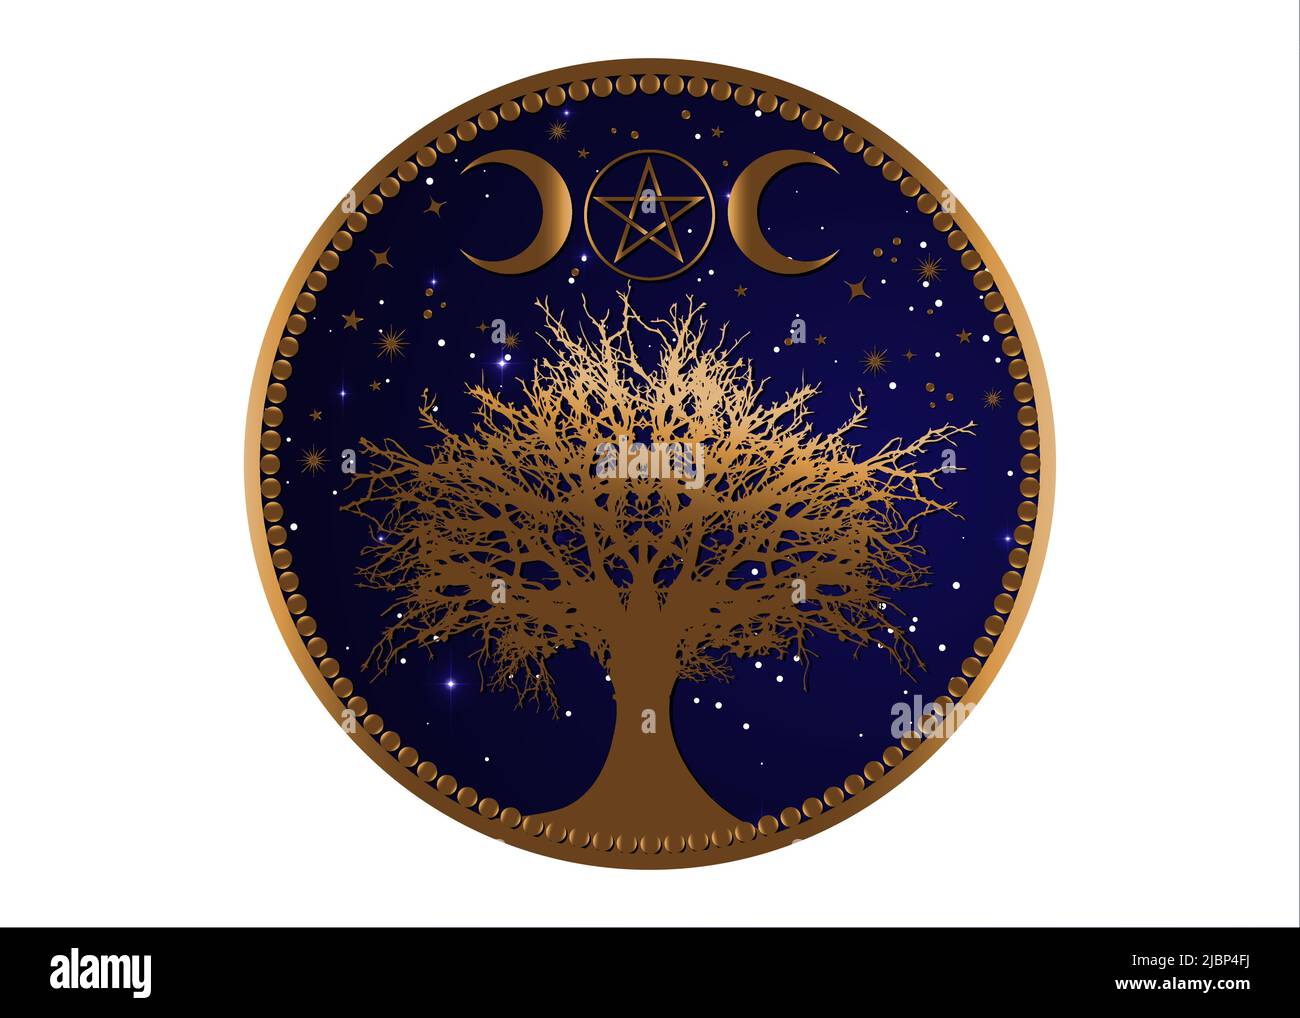 Arbre de vie Wicca signe mandala, Gold Mystique Lune Pentacle, géométrie sacrée, croissant d'or lune, demi-lune païen symbole de la triple déesse Wiccan Illustration de Vecteur